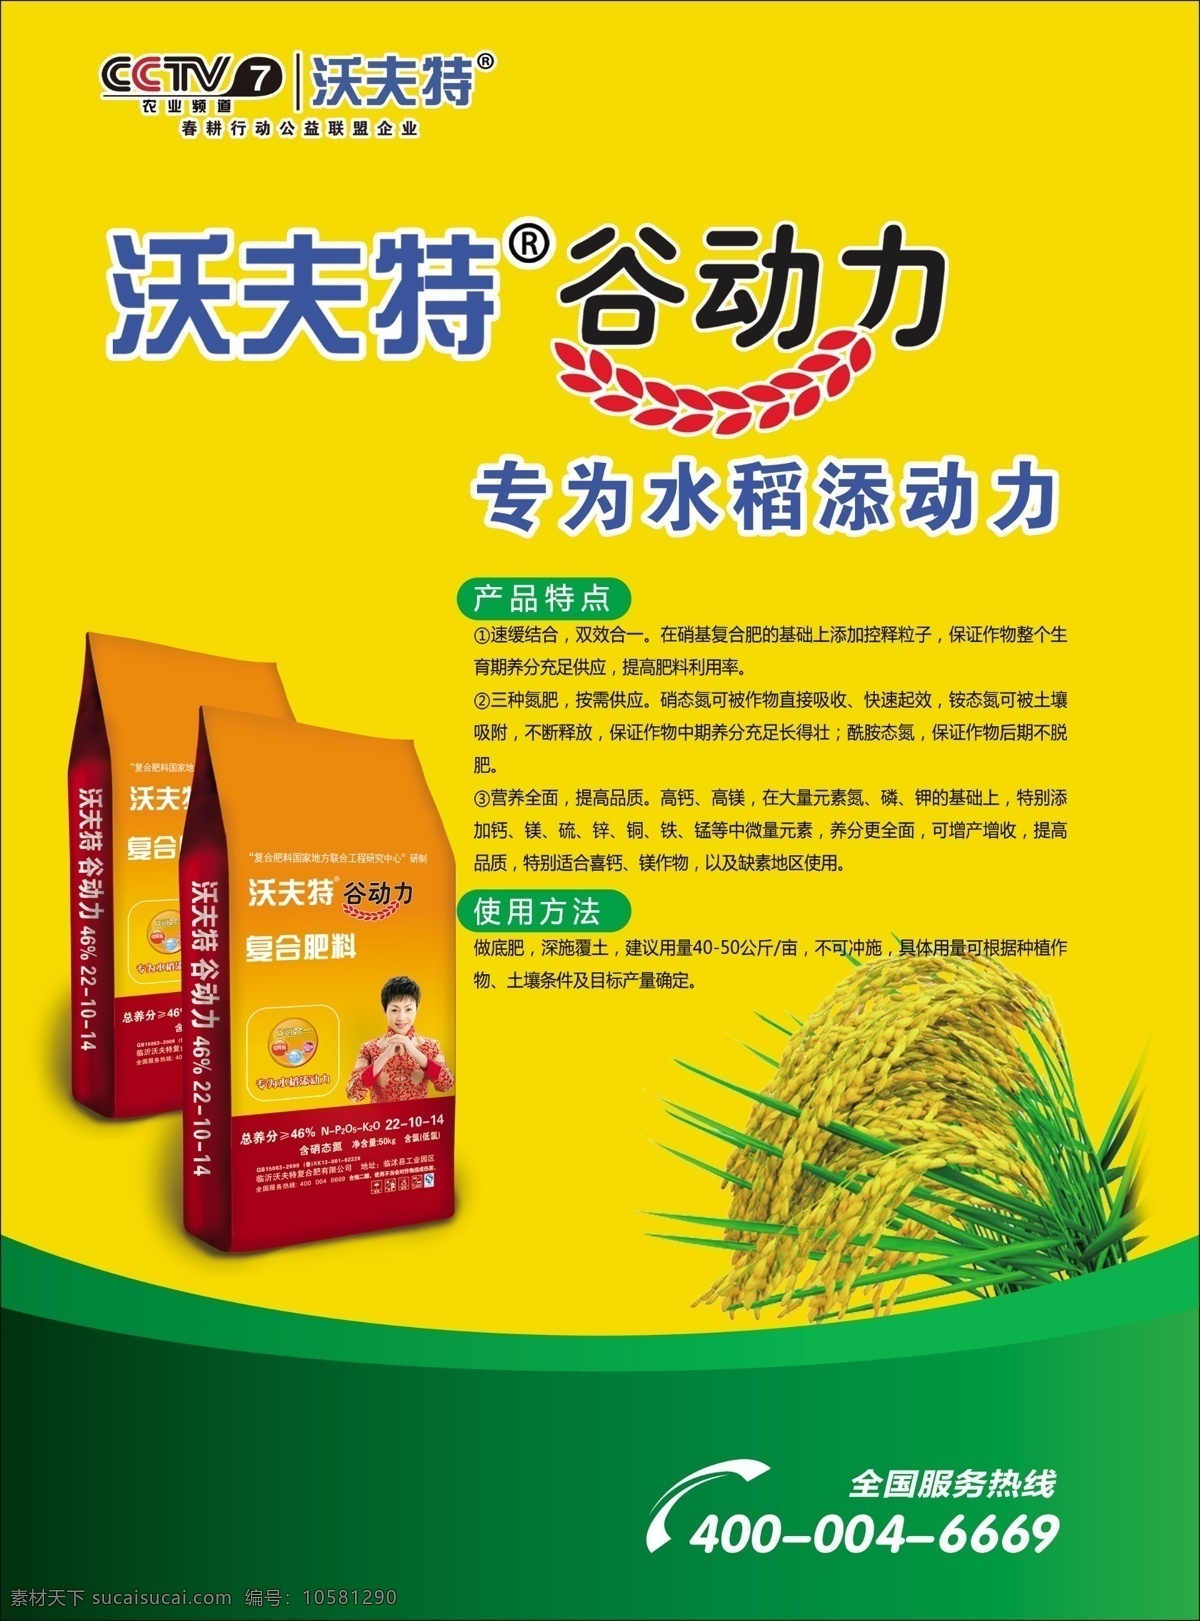 沃夫 特 谷 动力 dm 背面 沃夫特谷动力 水稻 水稻肥 复合肥料 谷动力包装袋 dm宣传单